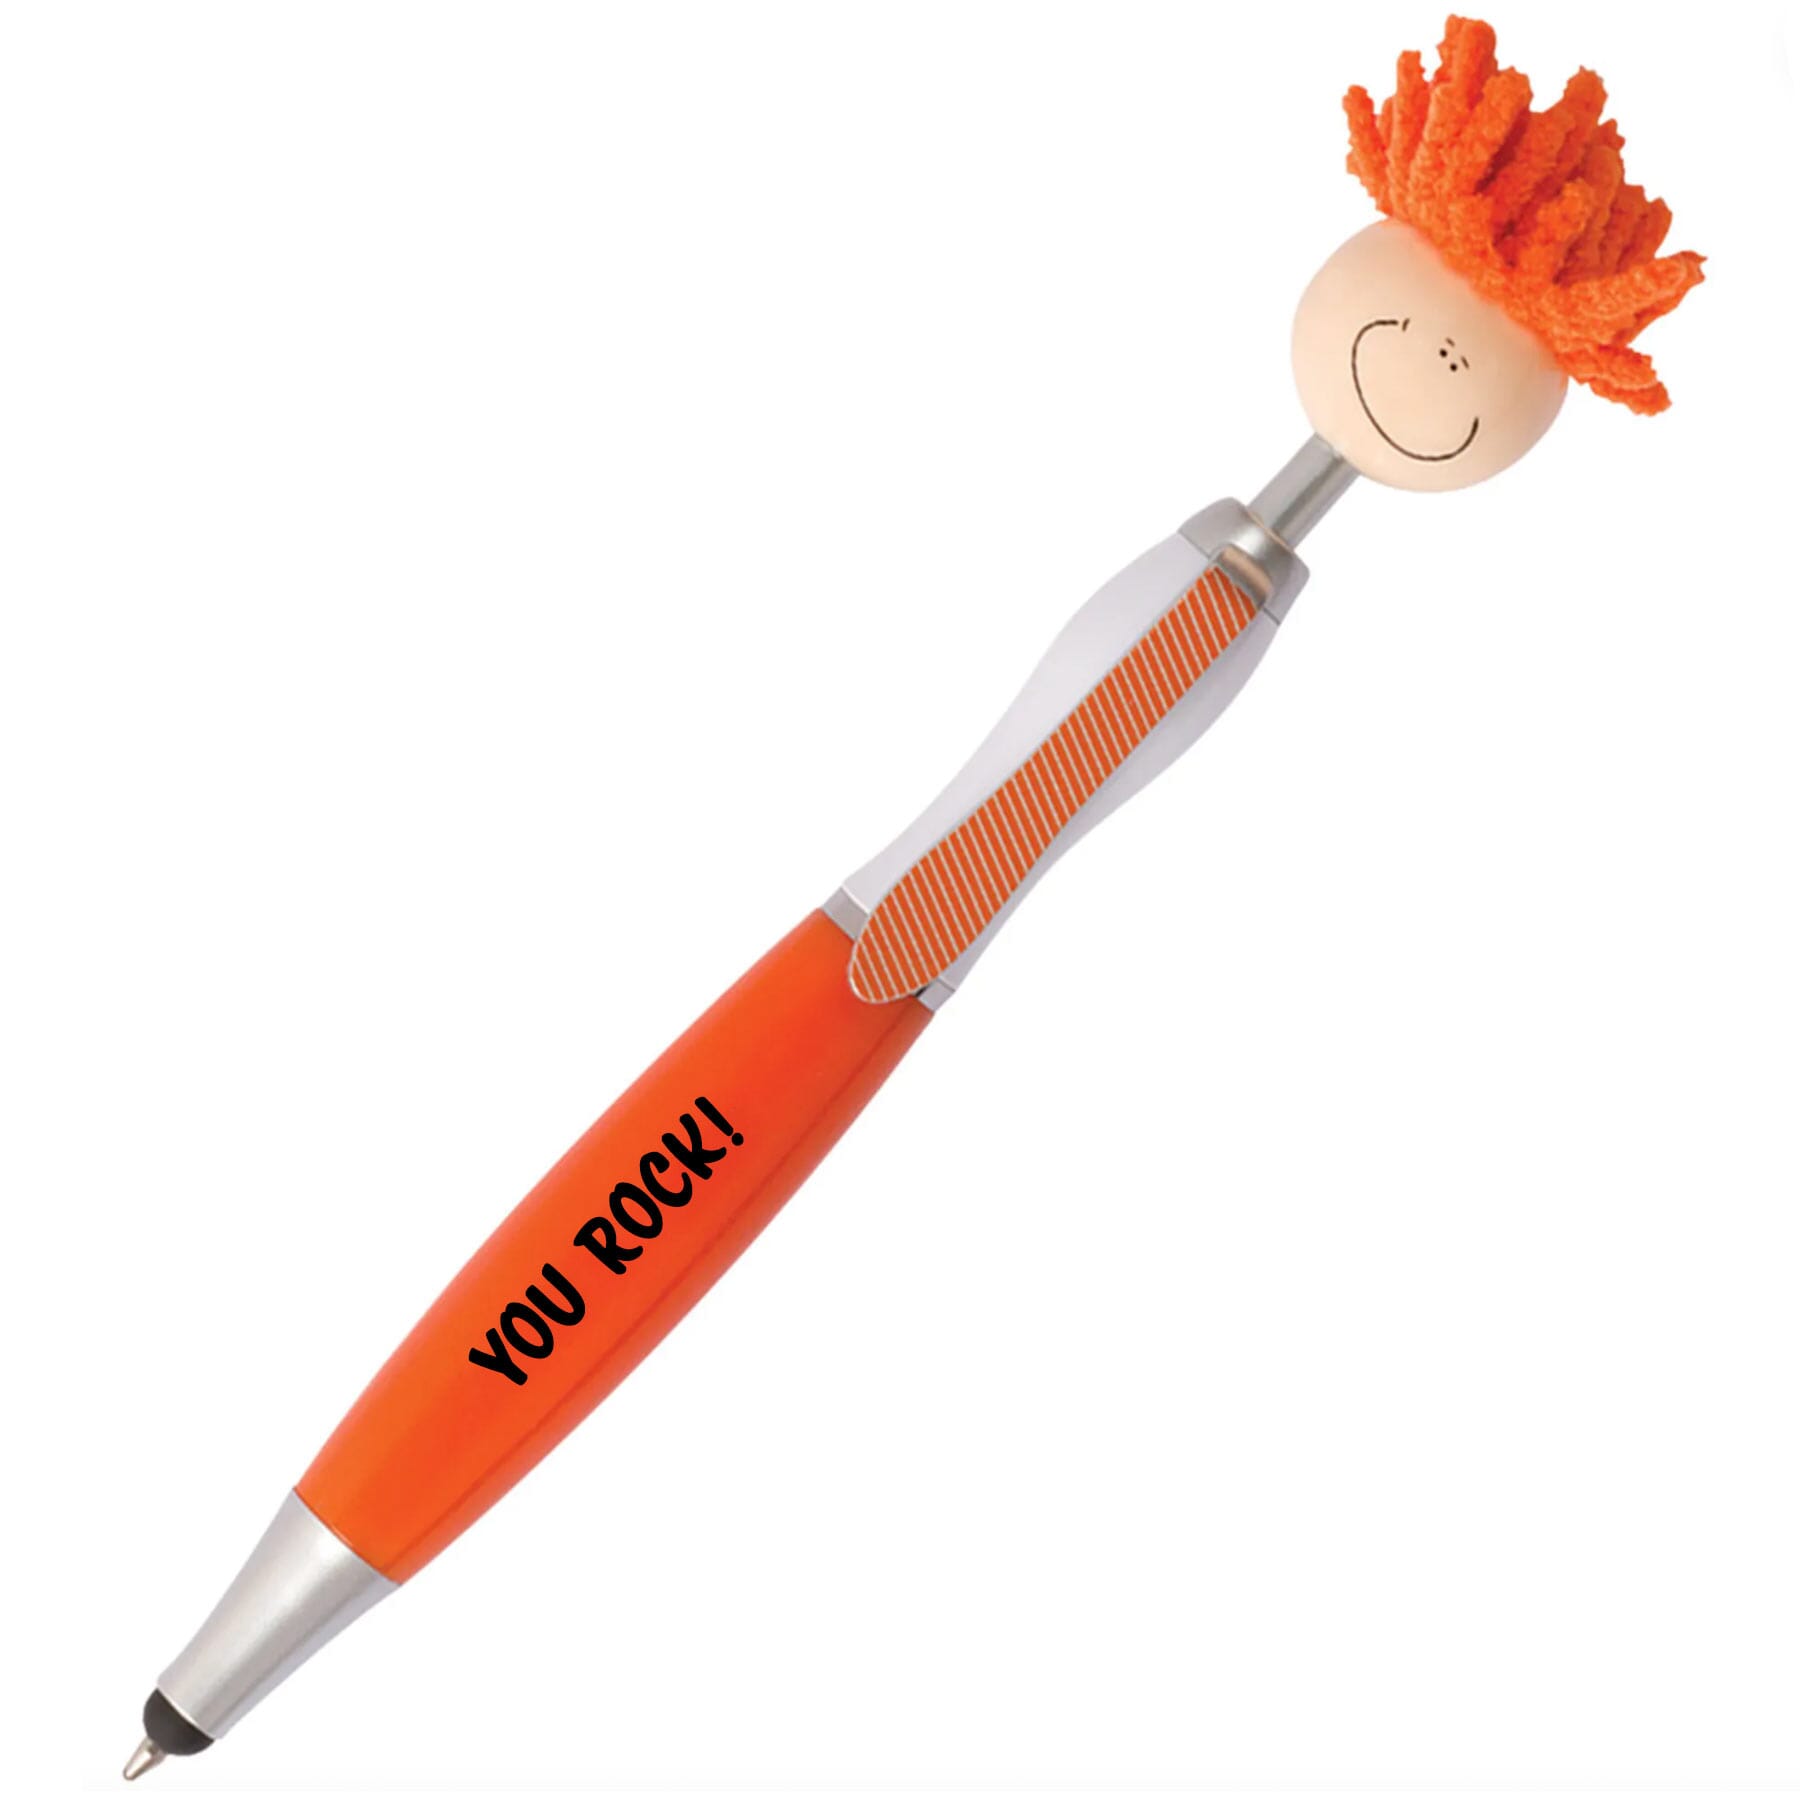 MopTopper Stylus Pen